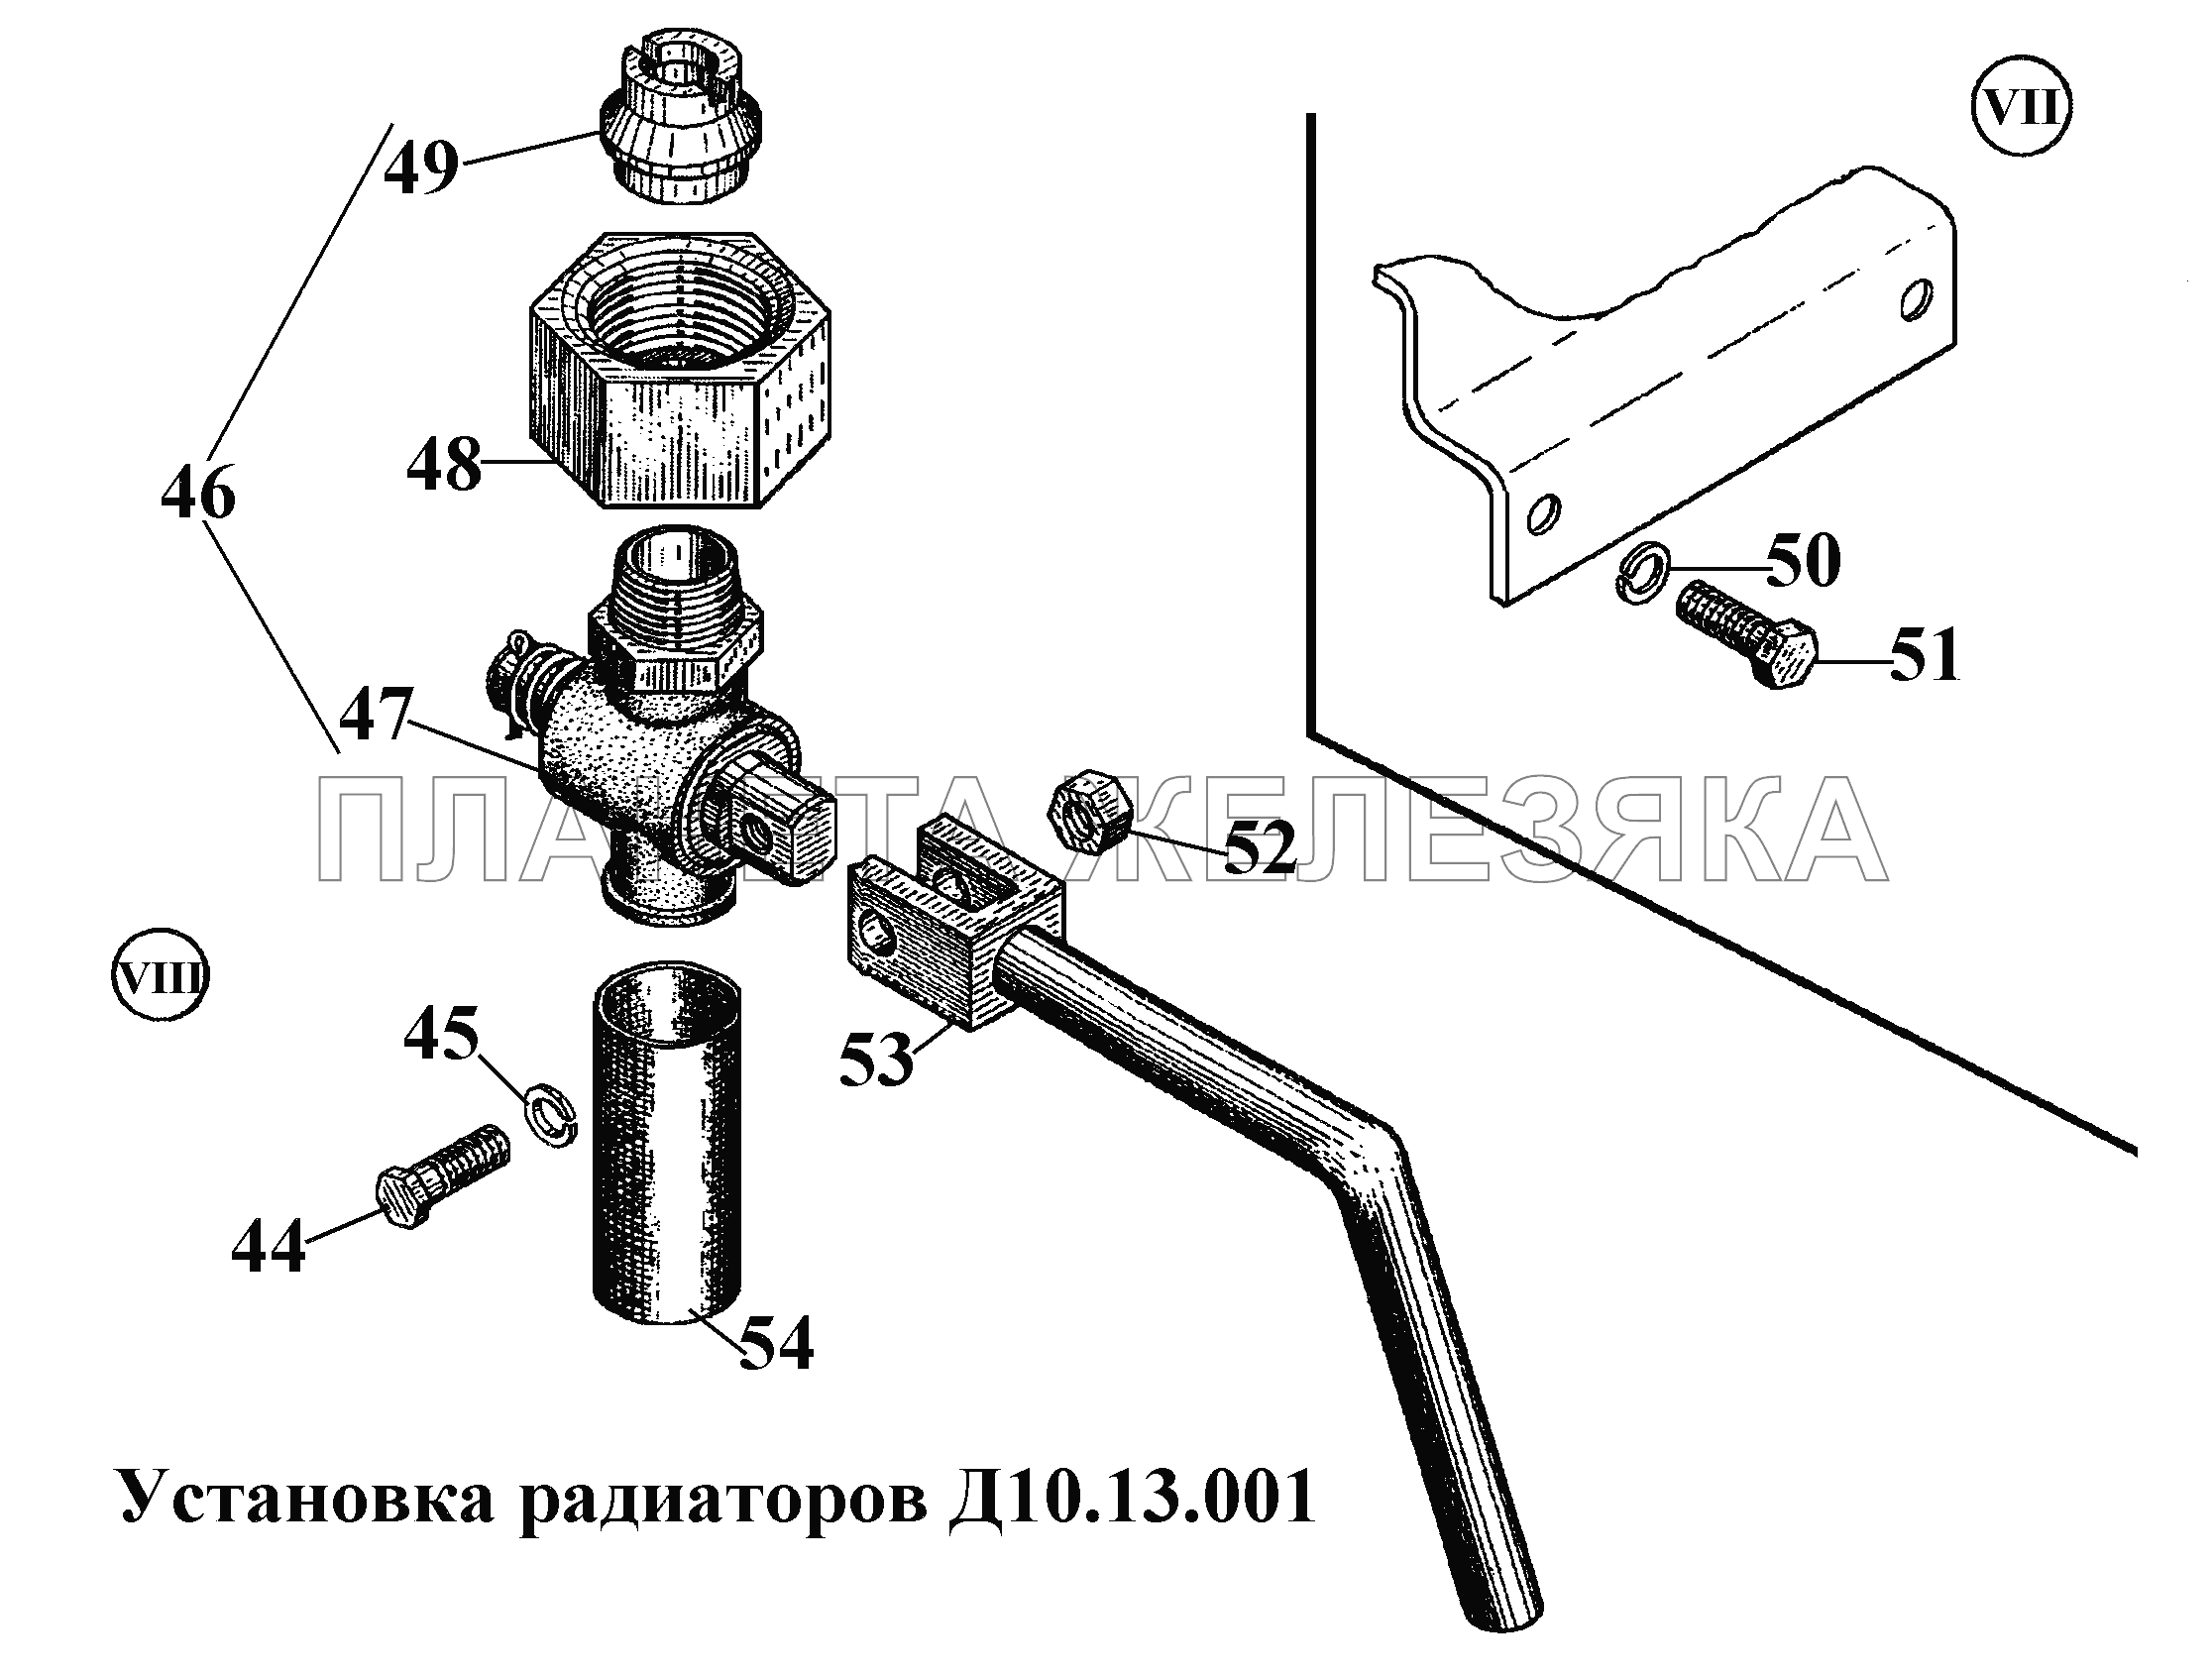 Установка радиаторов Д10.13.001 (6) ВТ-100Д